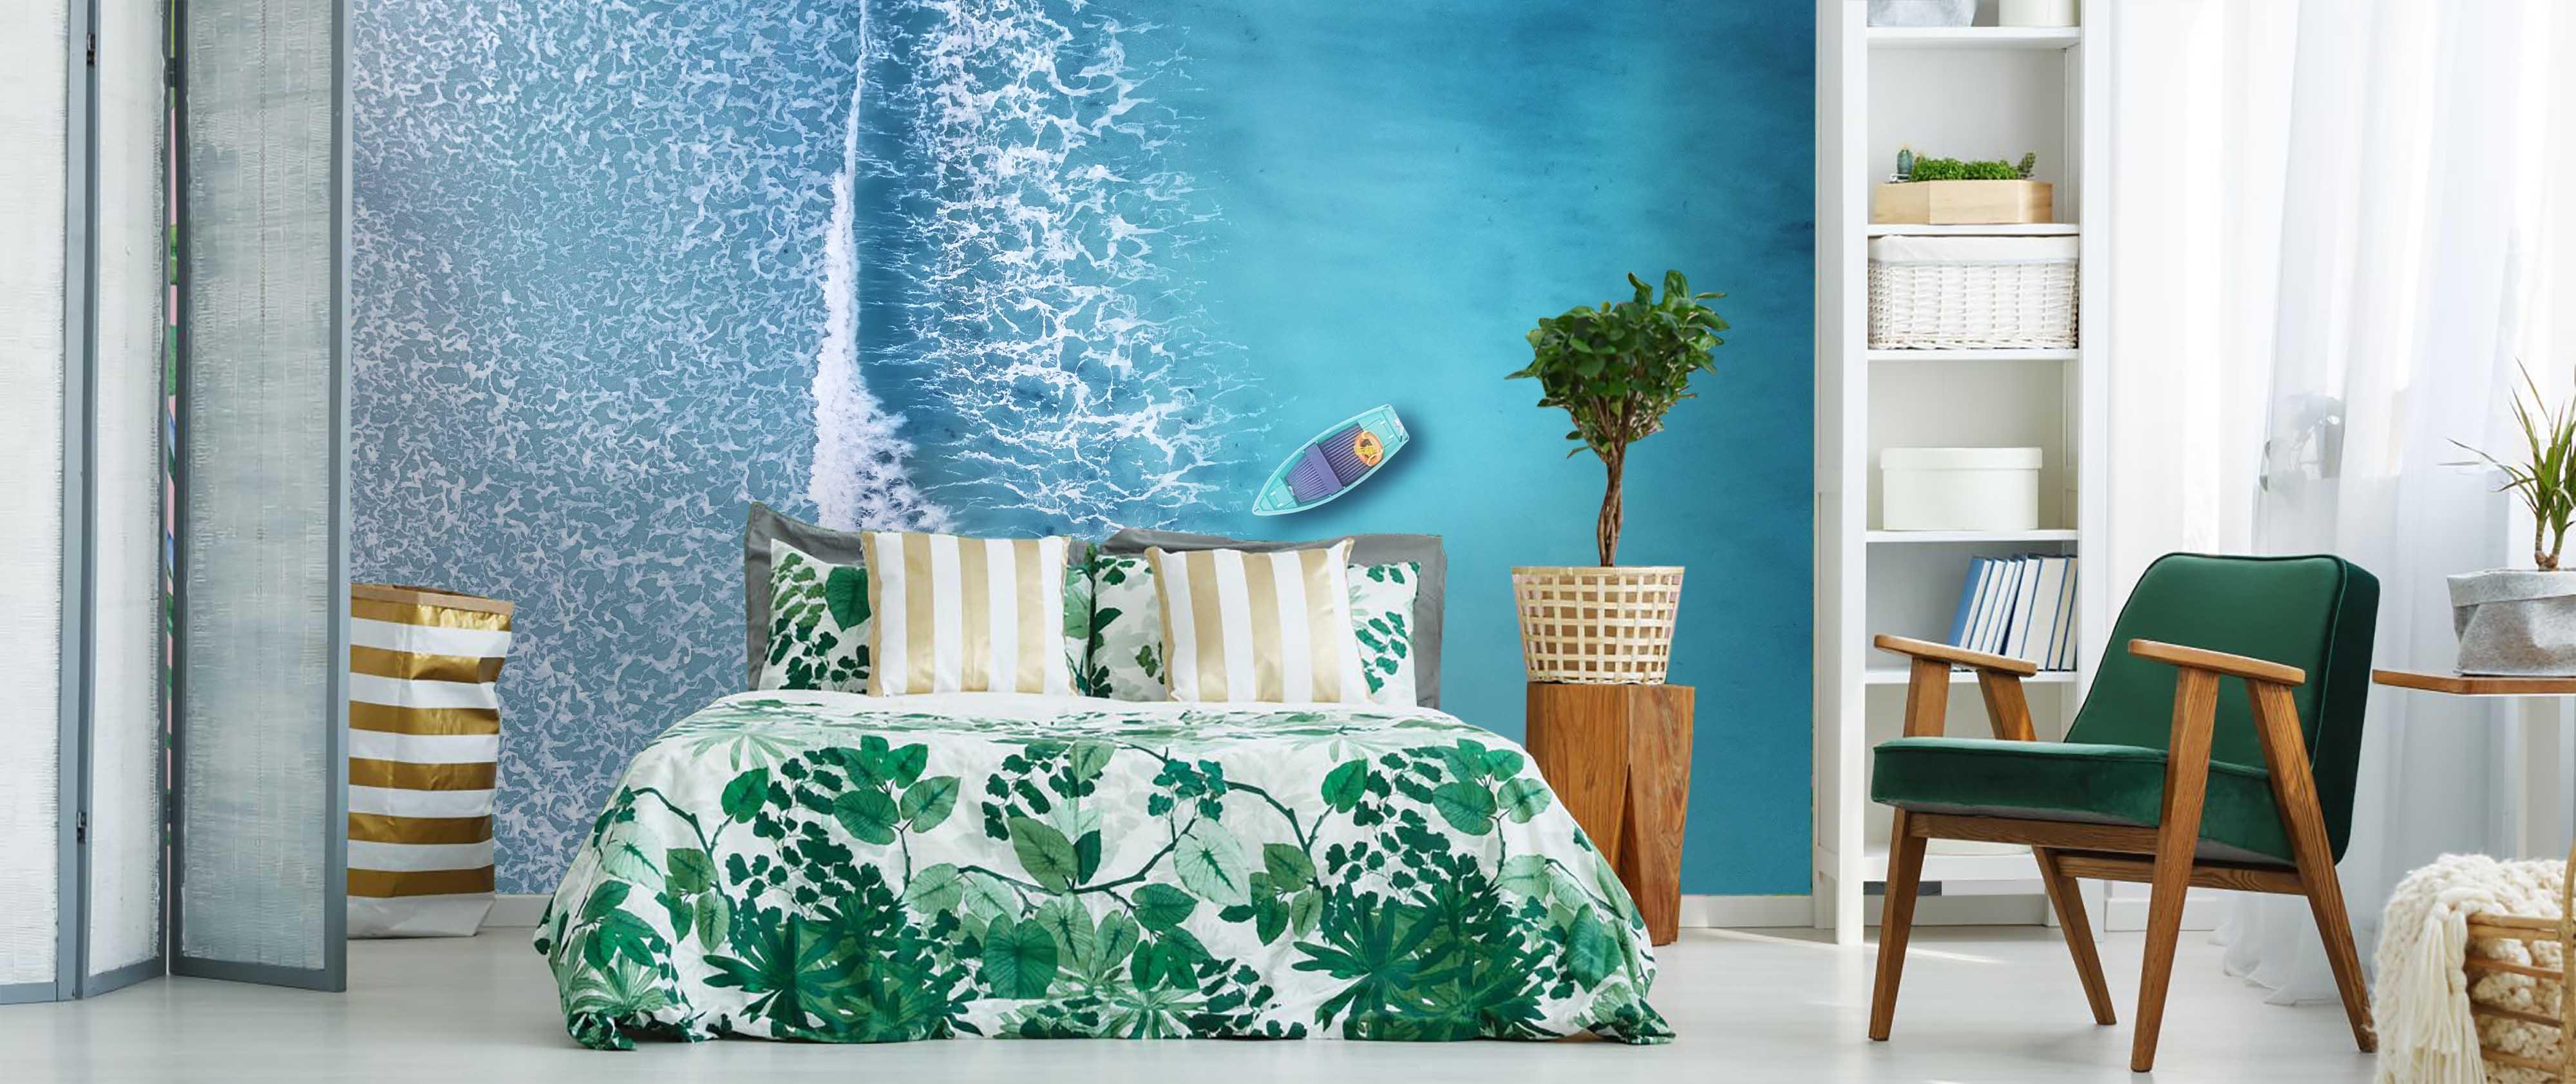 3D Overlooking Deep Blue Sea Boat Wall Mural Wallpaper 70- Jess Art Decoration